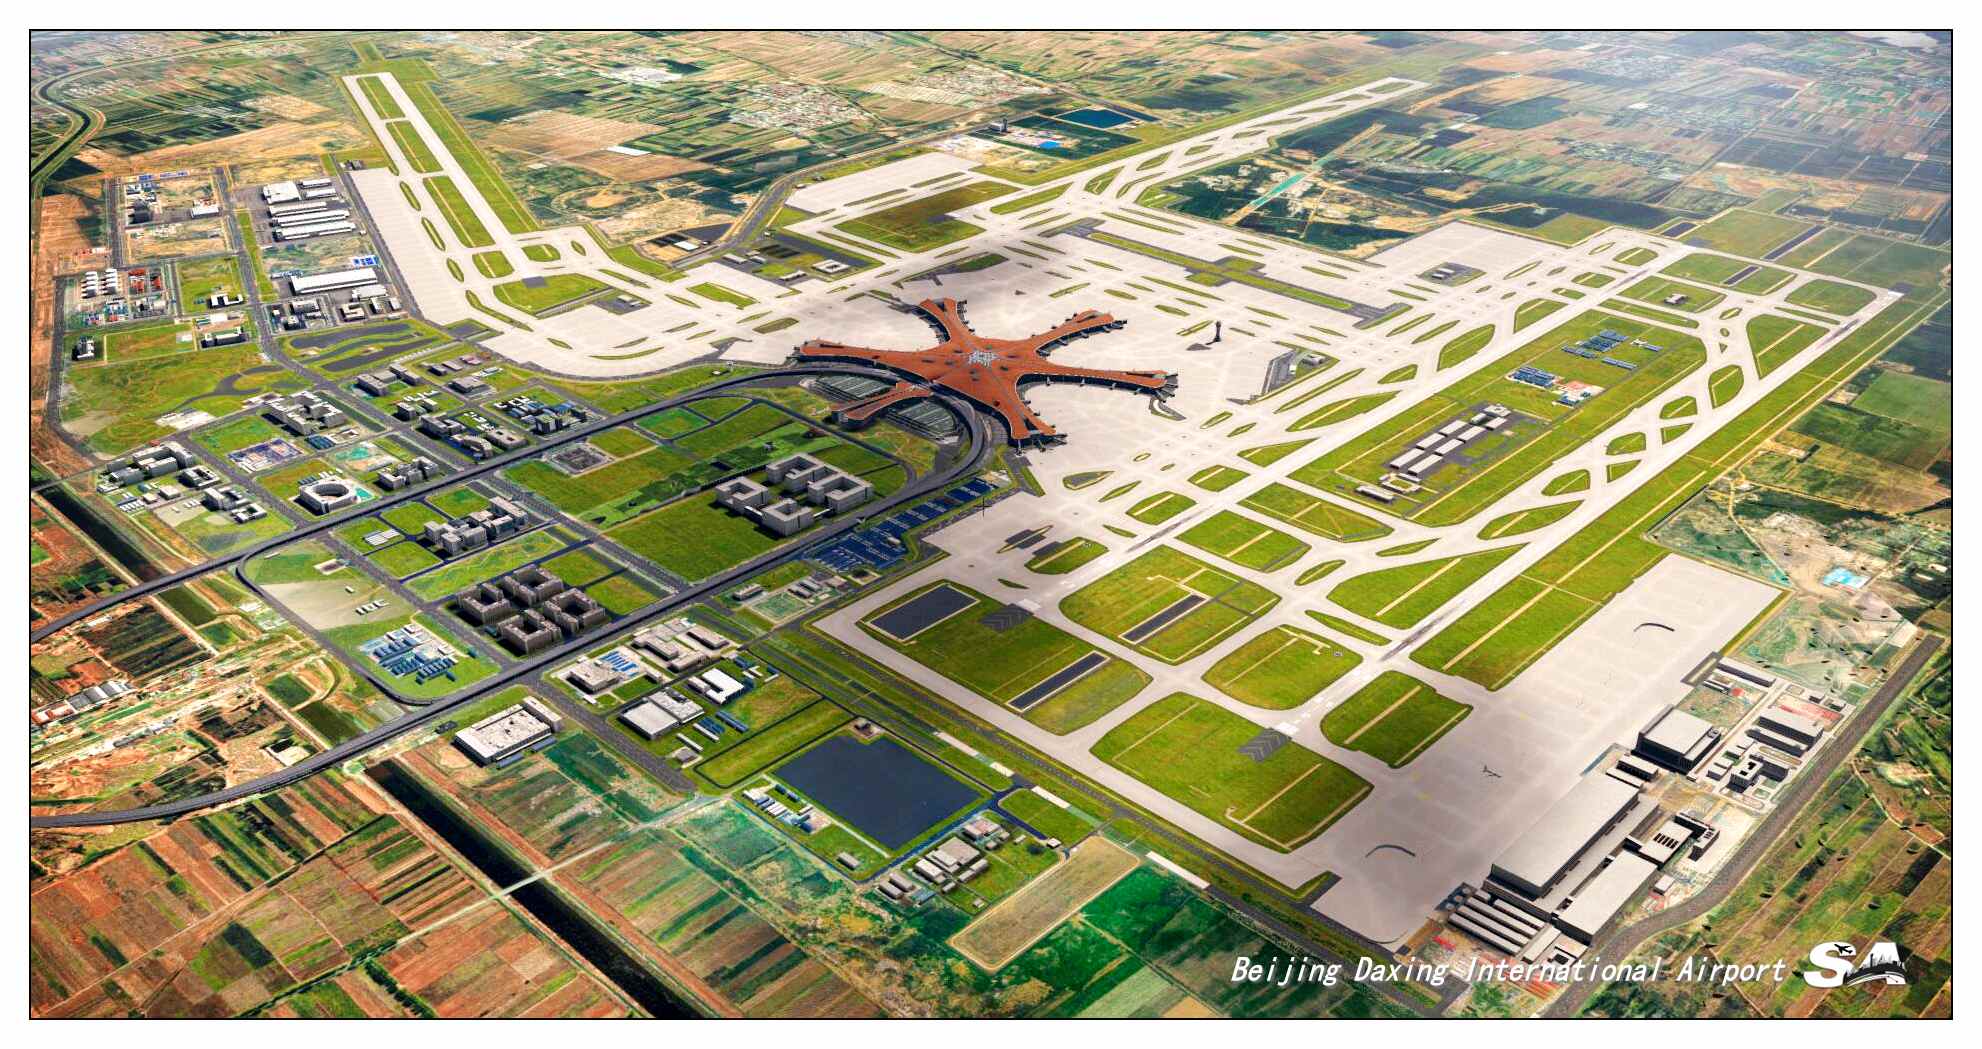 【X-Plane】ZBAD北京大兴国际机场-正式发布-2748 